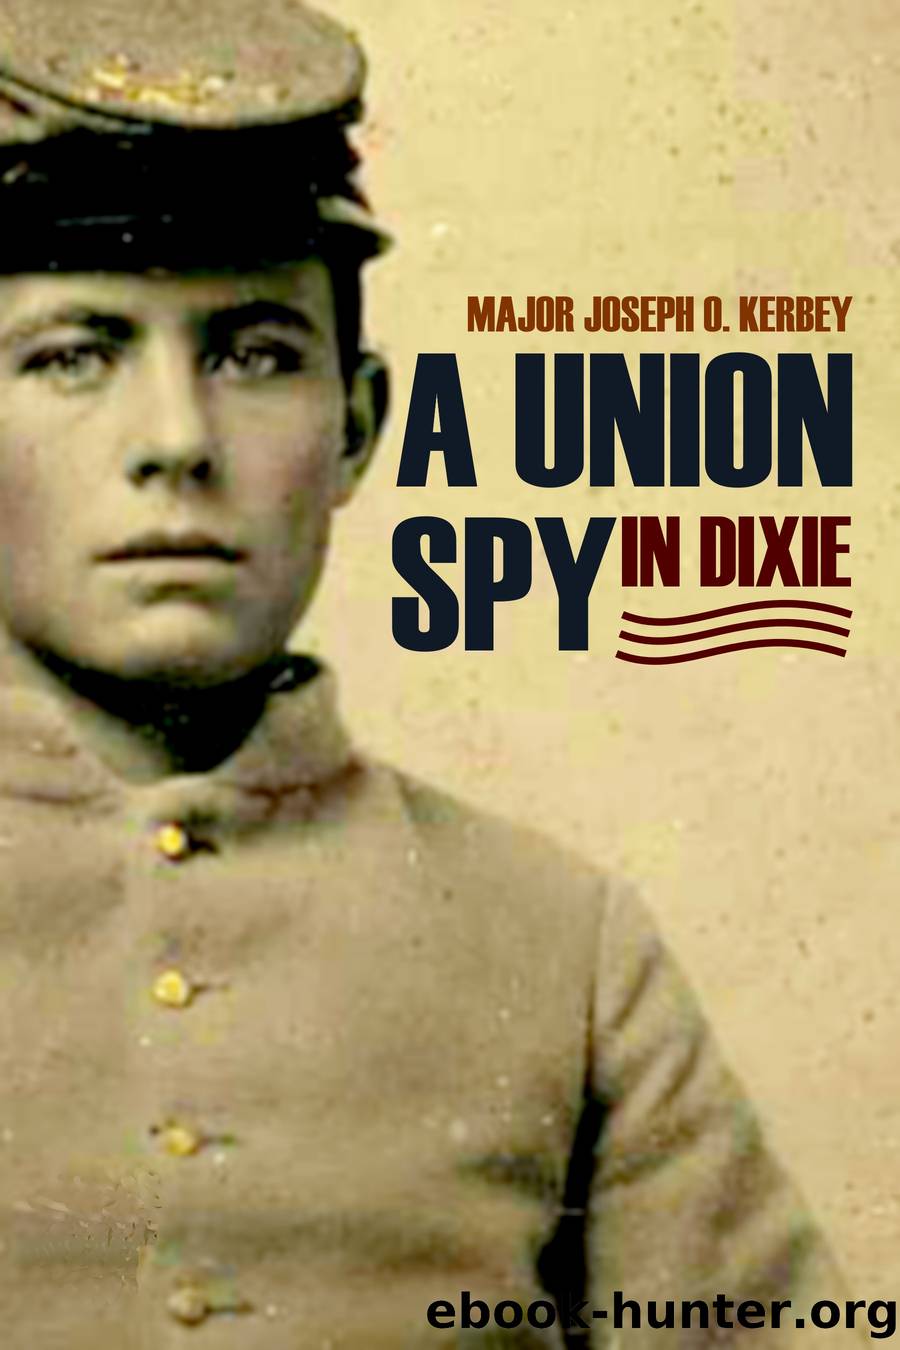 A Union Spy in Dixie by Joseph O. Kerbey